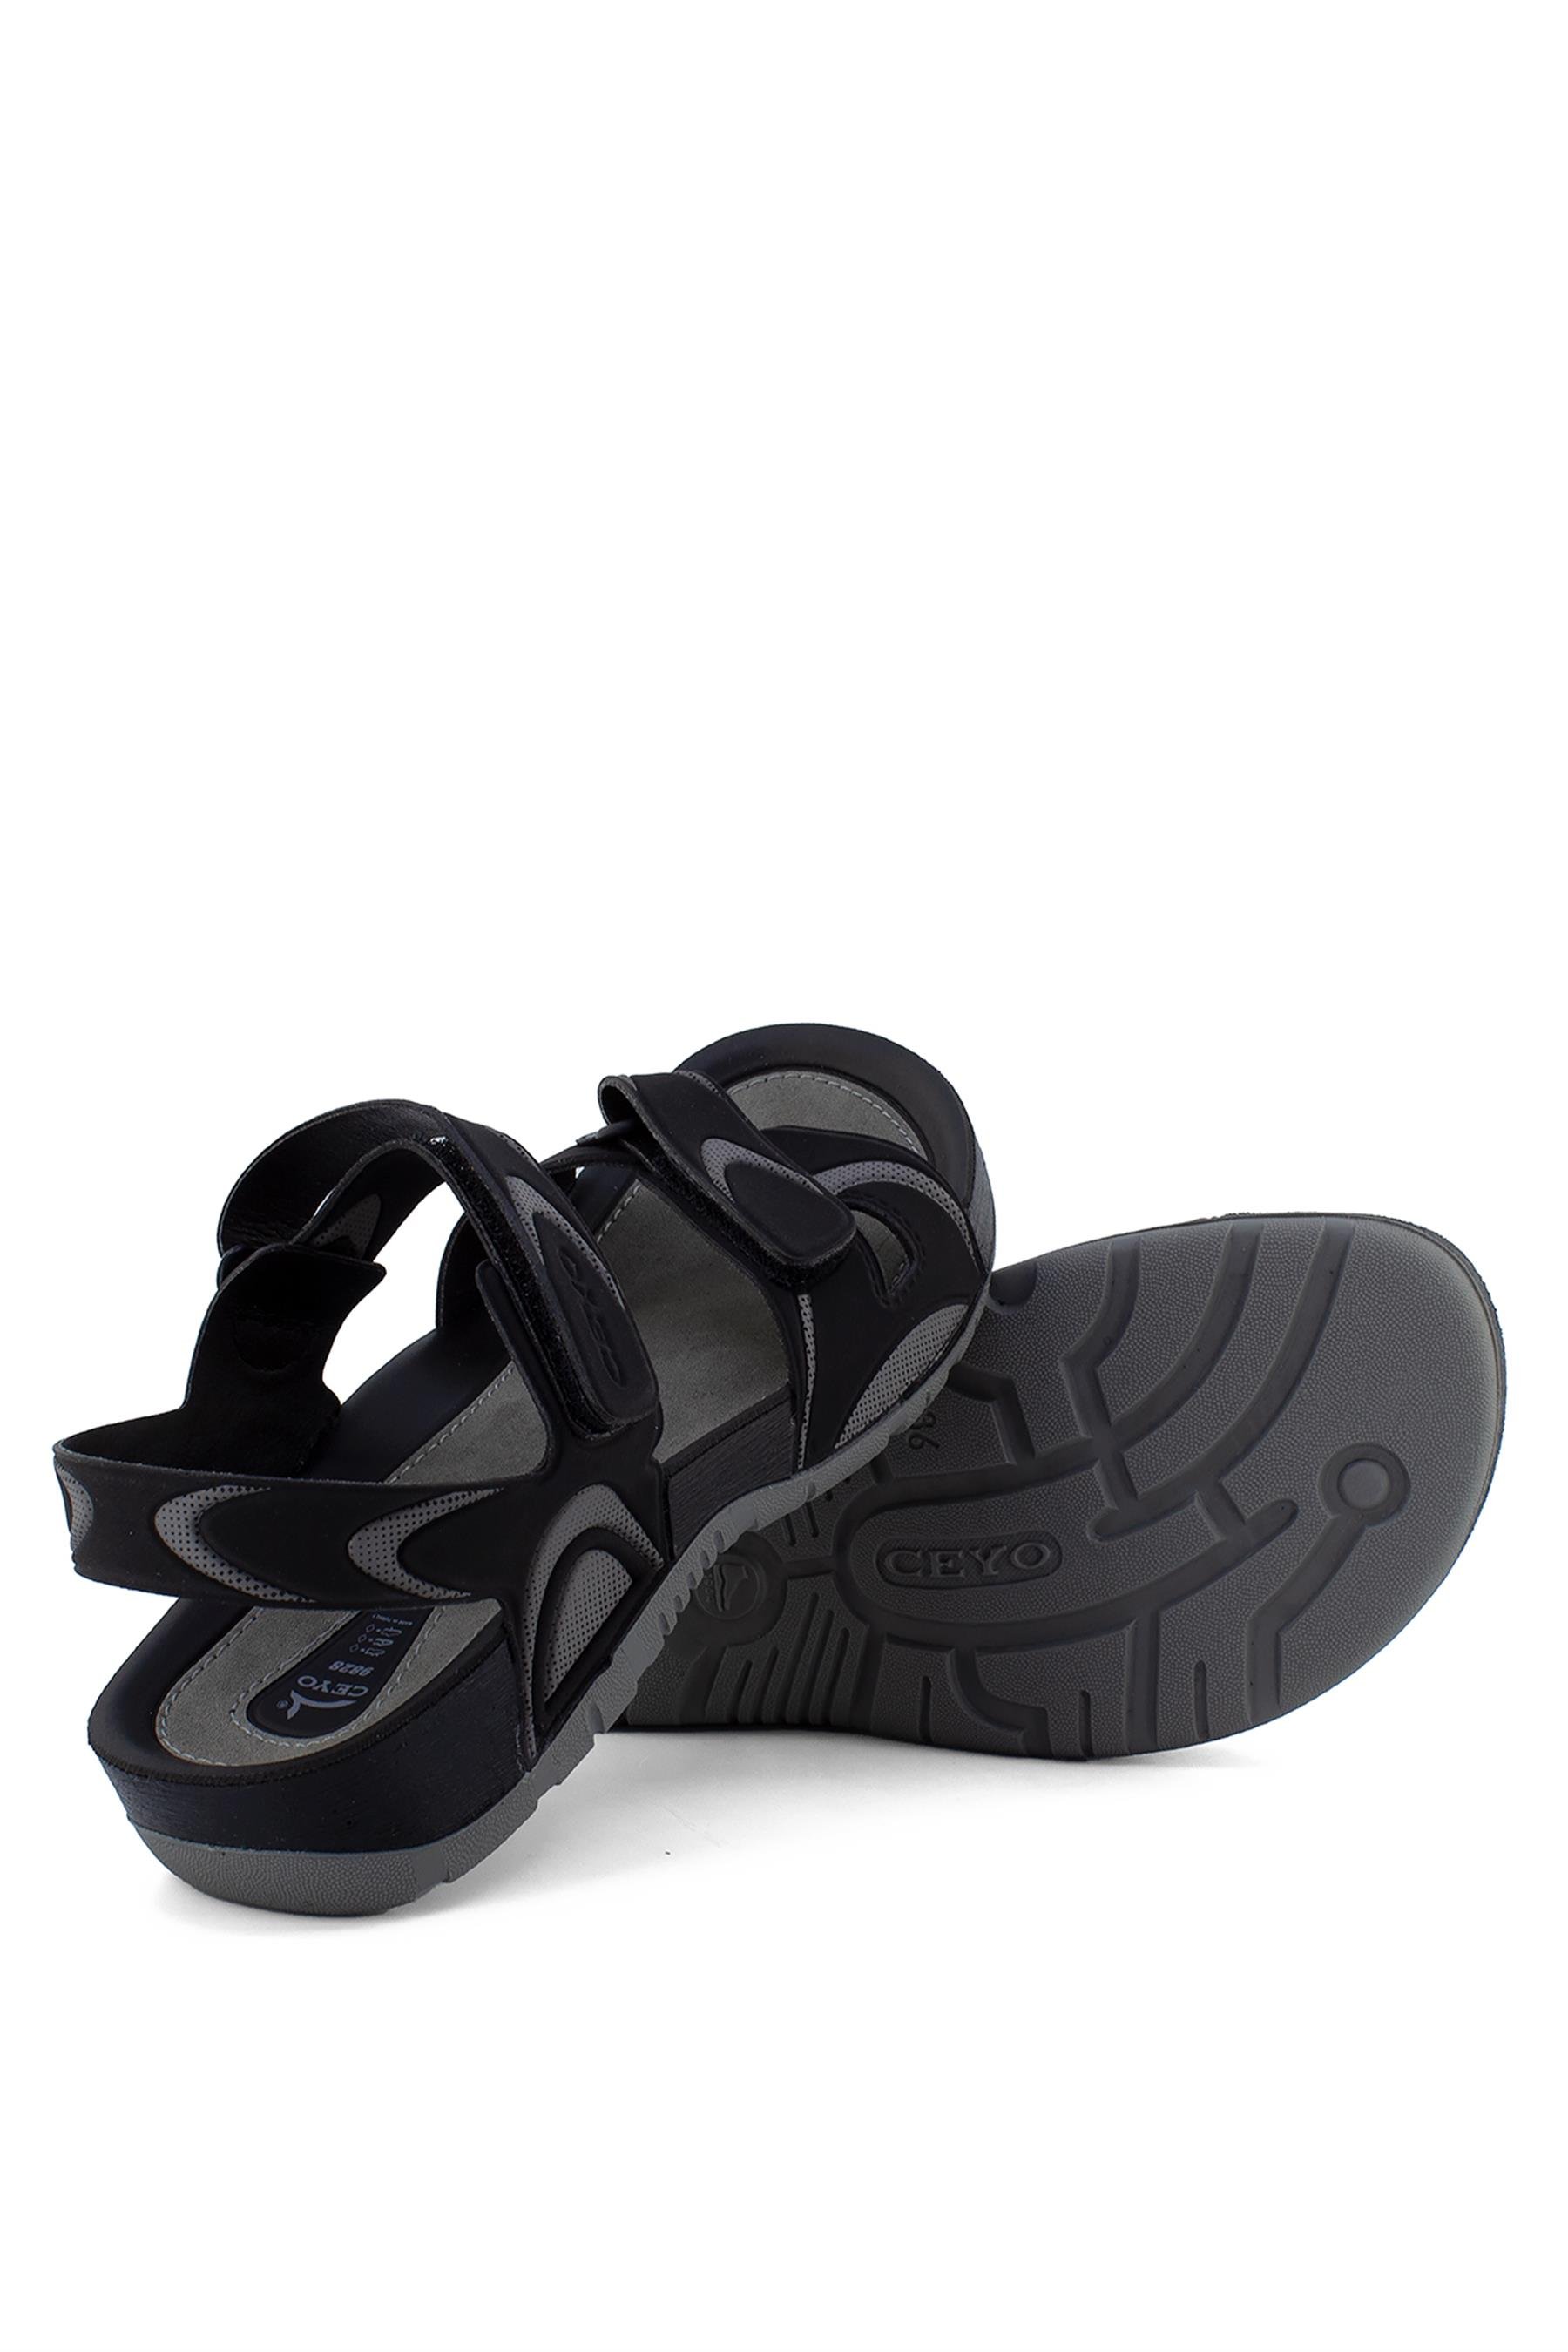 Ceyo 9828-3 Kadın Sandalet Siyah - Ayakkabı Fuarı Elit